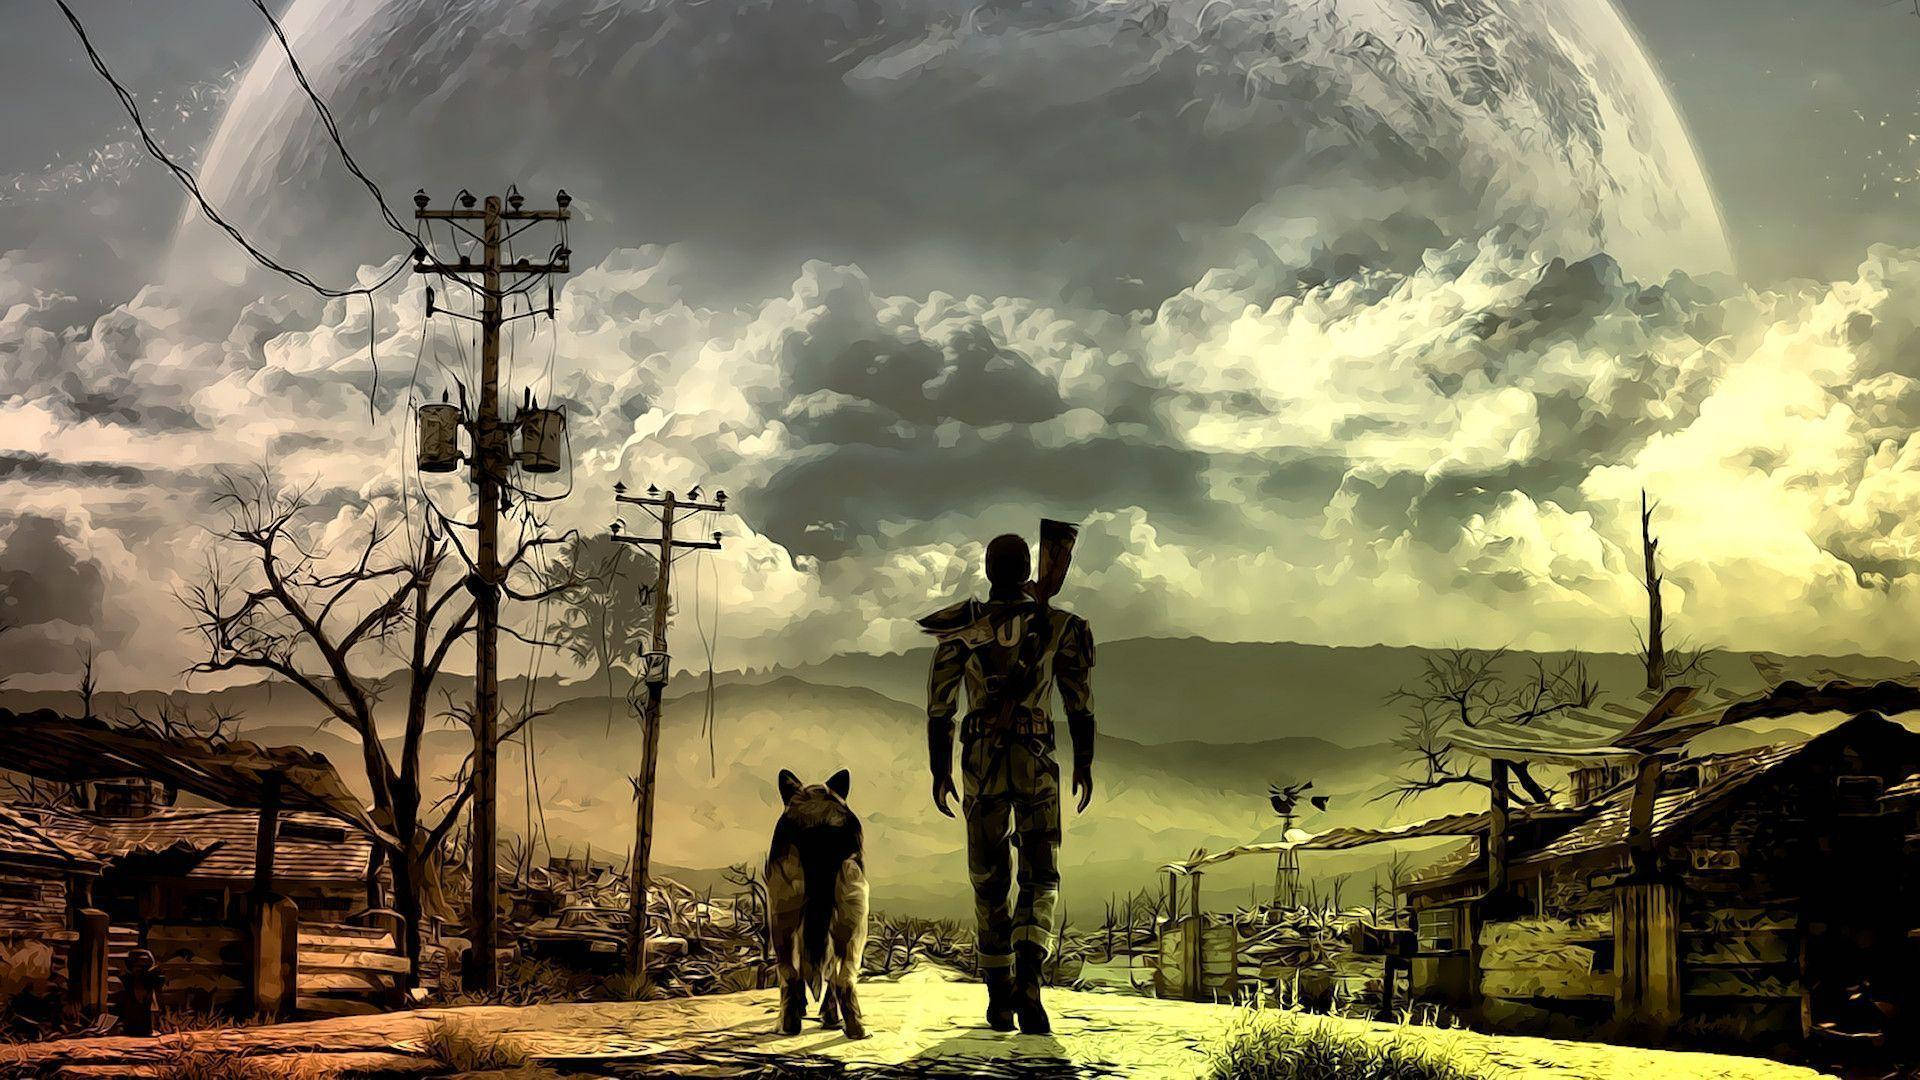 Tải hình nền Fallout miễn phí - [100+] Fallout Wallpapers: khai thác ý tưởng của bối cảnh thời kỳ hậu tận thế, cùng với những người chơi khám phá những thành phố hoang tàn và chiến đấu chống lại nguy hiểm như quái vật và băng đảng. Những bộ hình nền Fallout sẽ đem lại cho bạn cảm giác phiêu lưu tái hiện chân thực, tưởng như bạn đang sống trong một thế giới hoàn toàn mới.